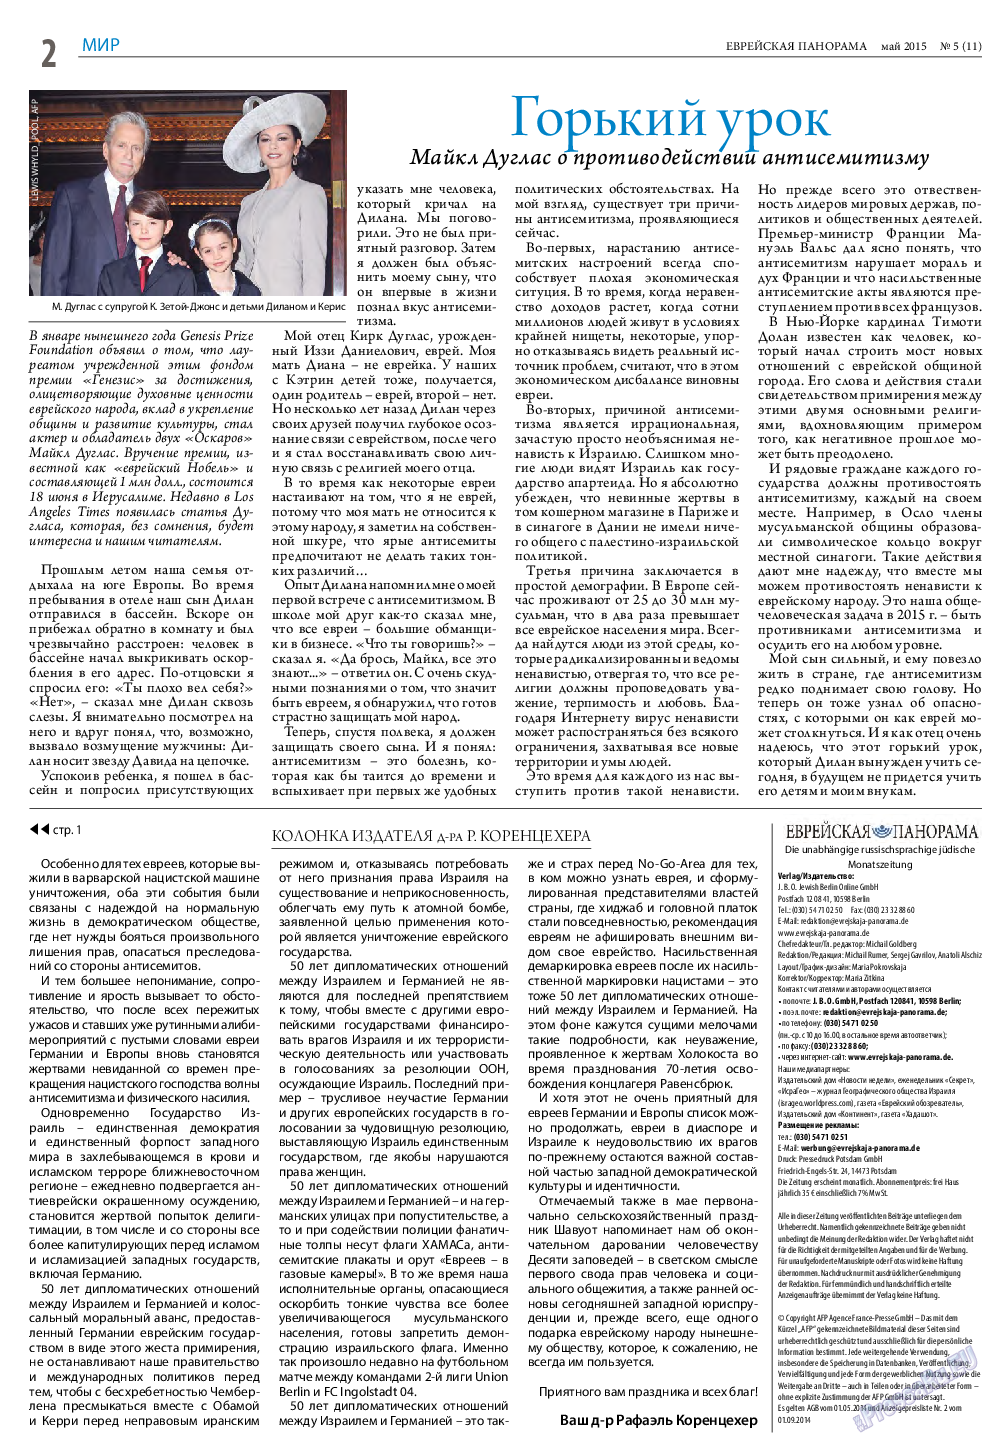 Еврейская панорама (газета). 2015 год, номер 5, стр. 2